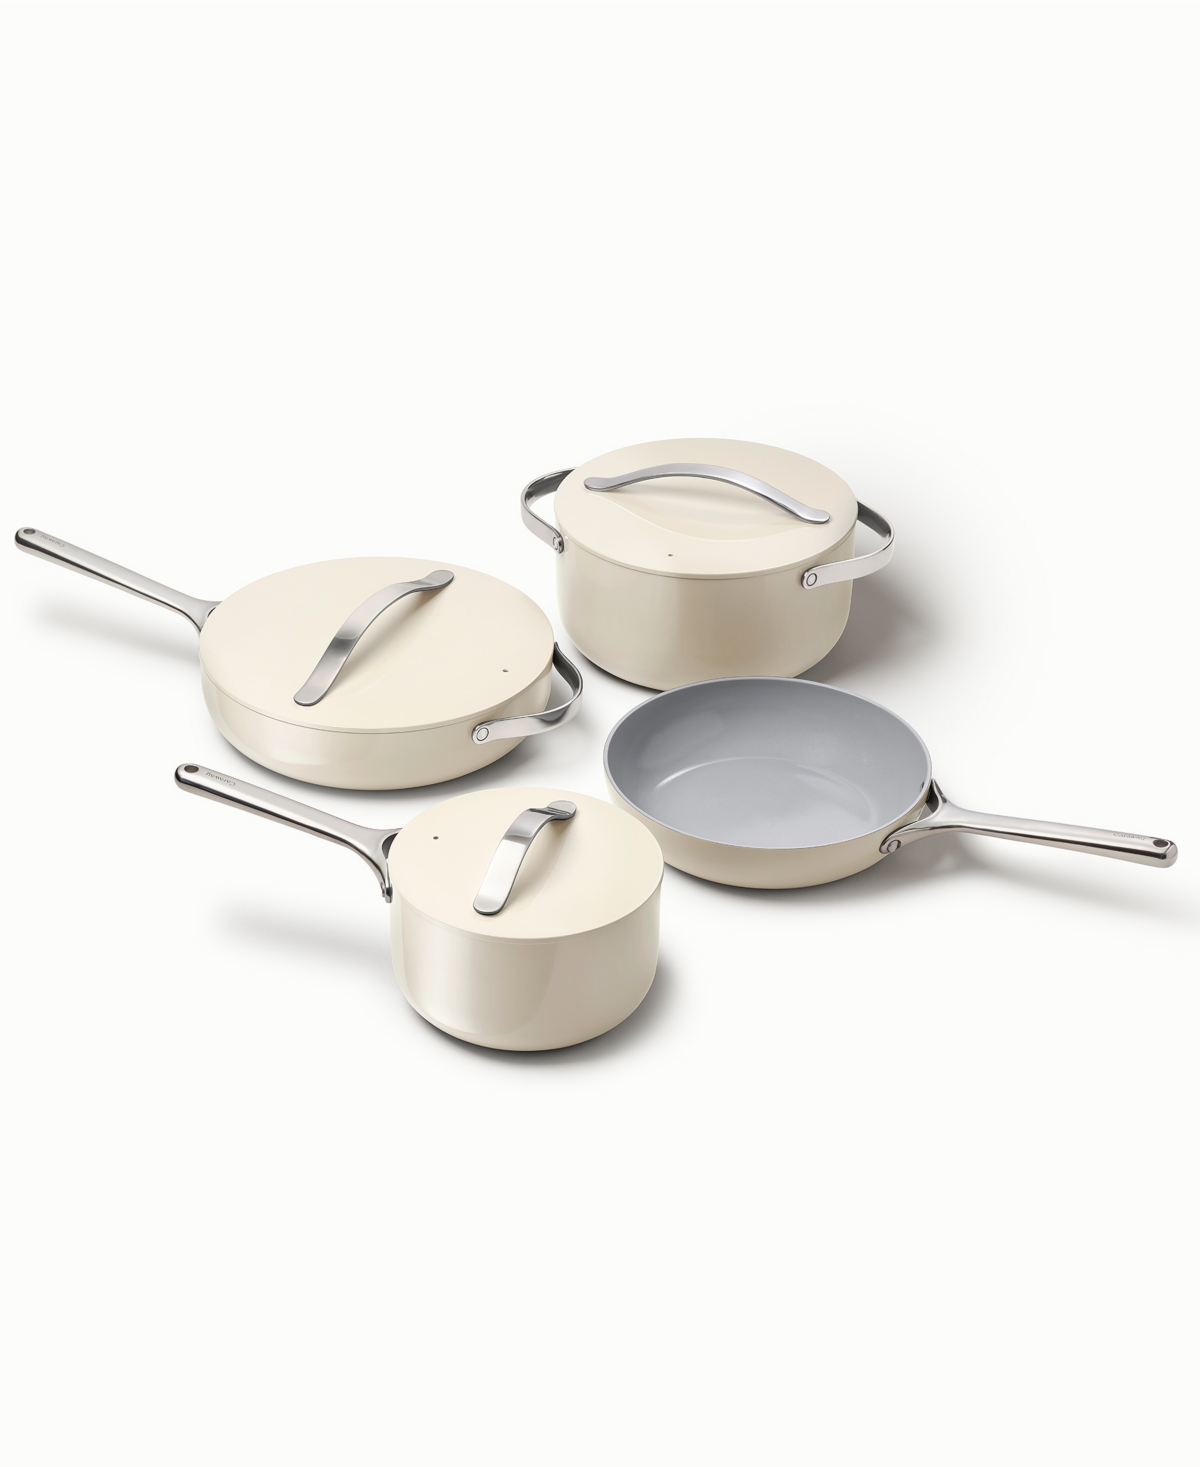 Caraway Aluminum Non-toxic Ceramic Non-stick 7 Piece Cookware Set In Cream